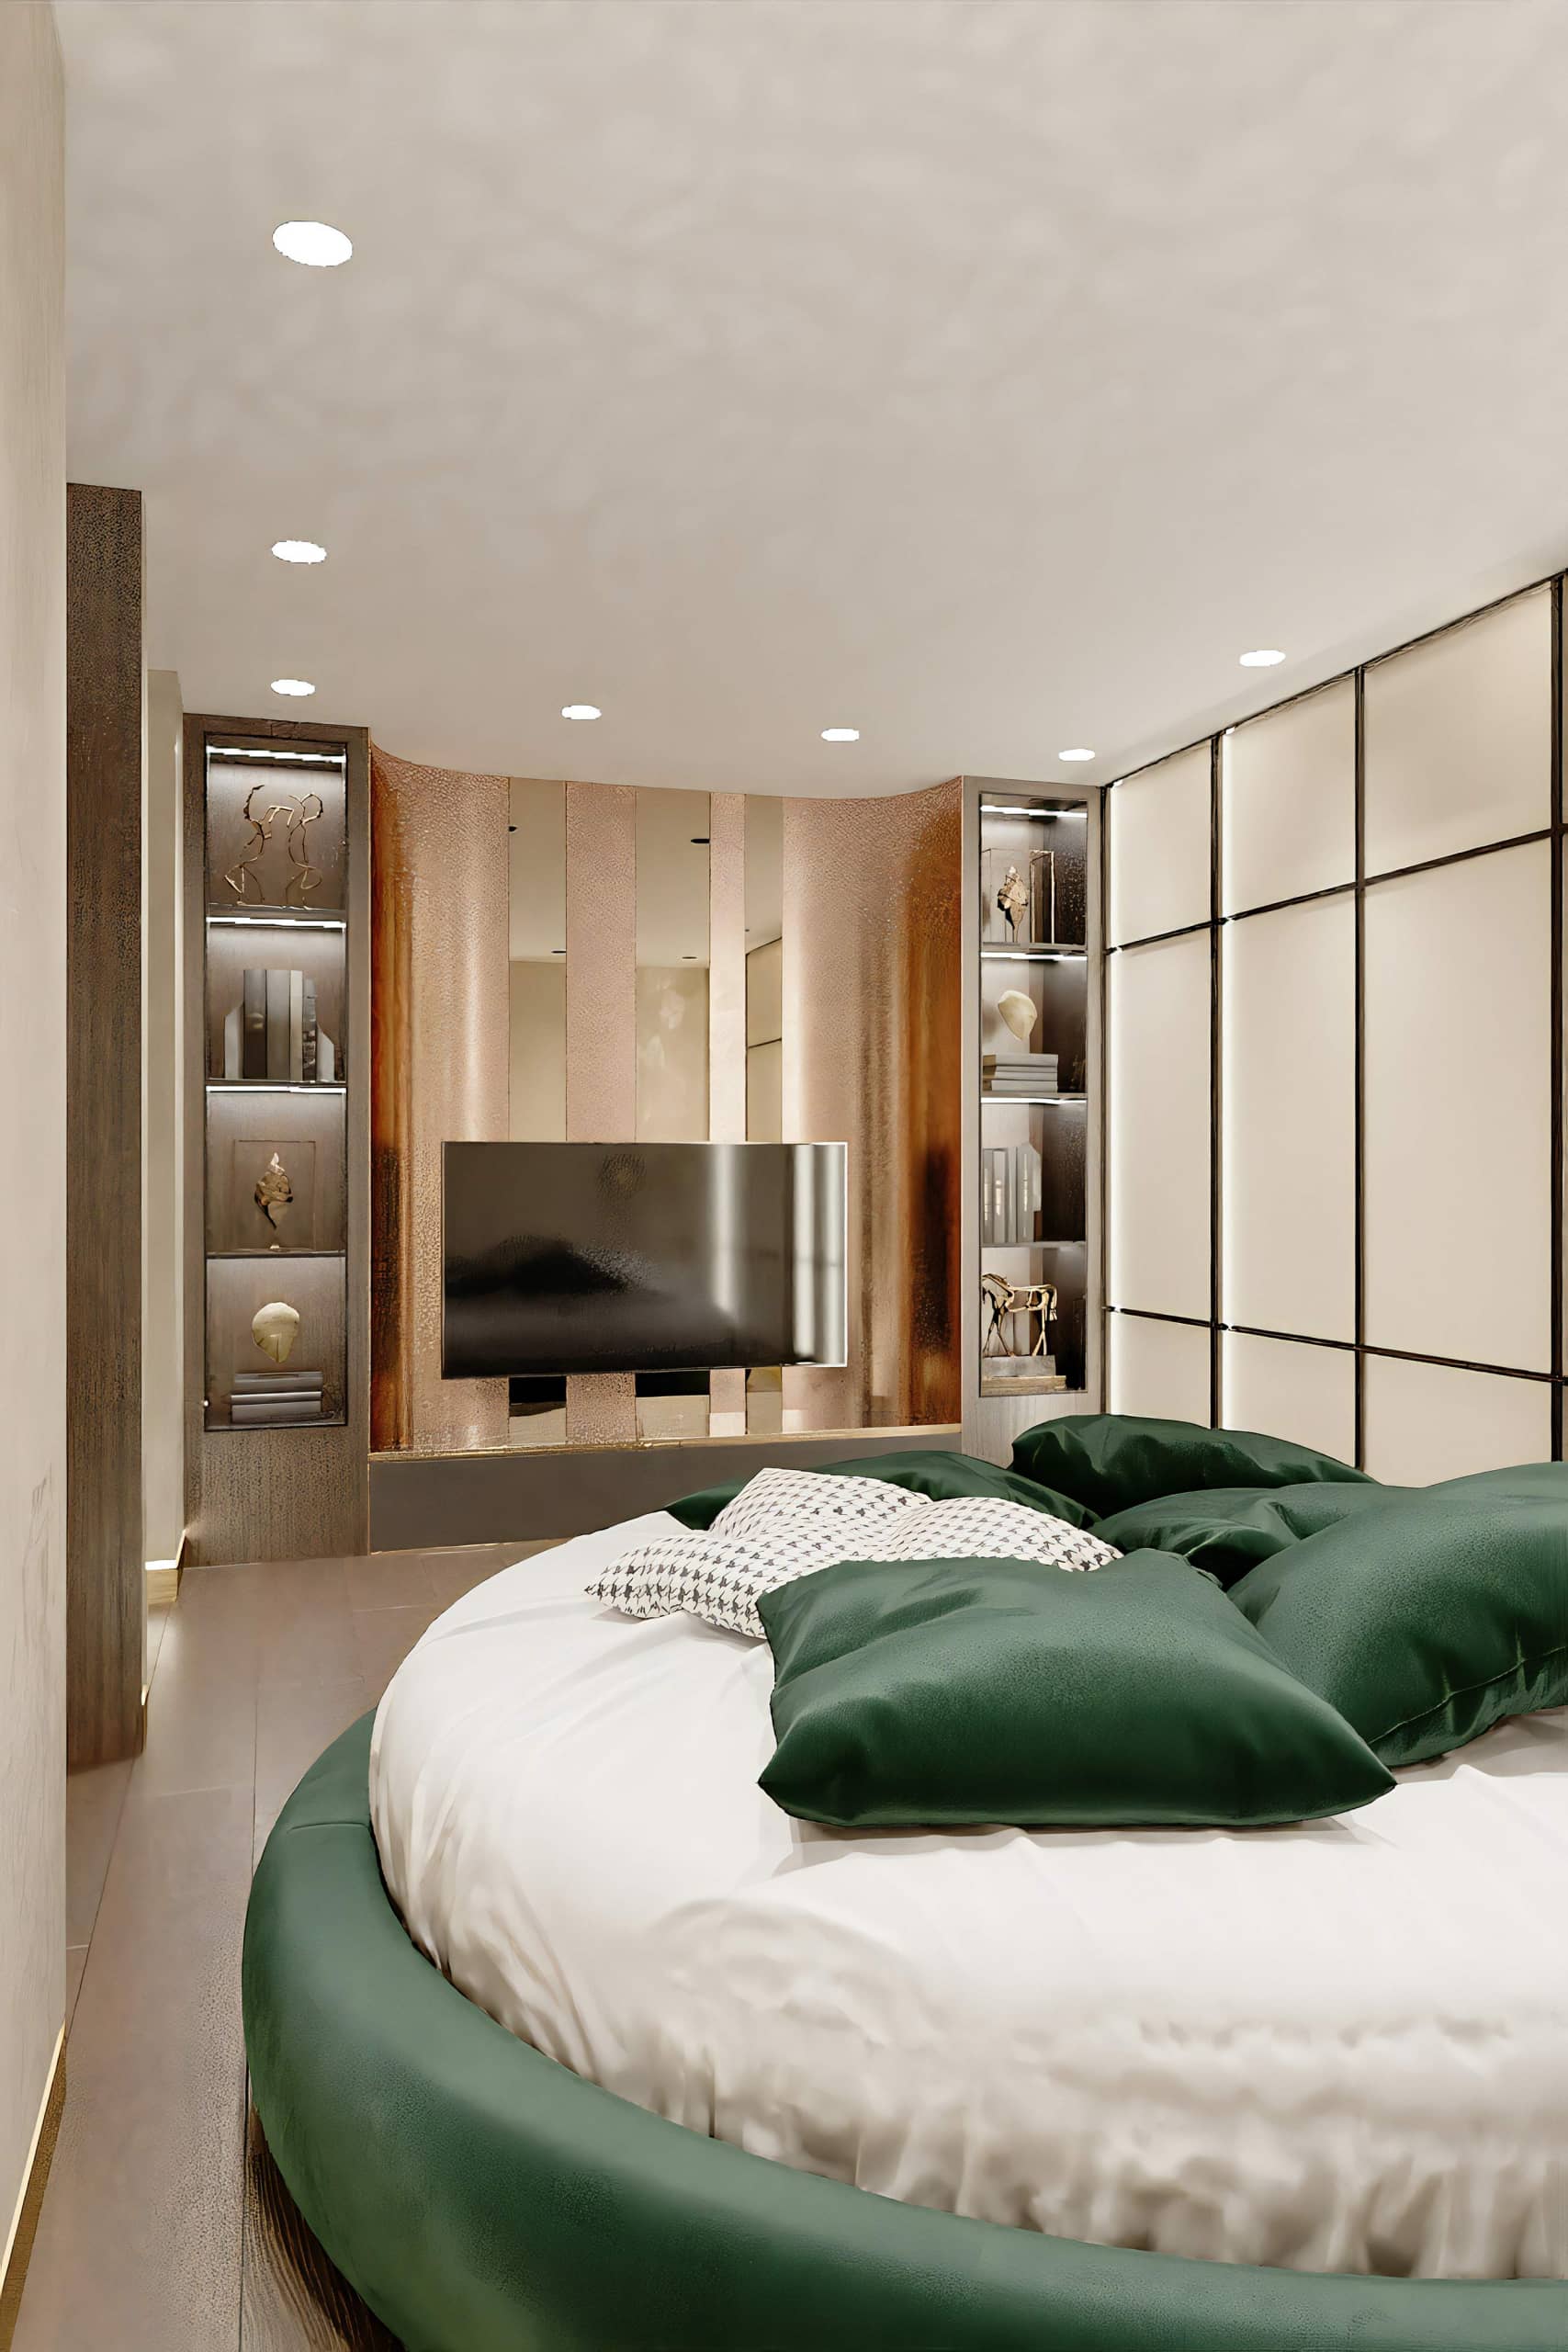 Оформление интерьера спальни в стиле ар-деко. Фото № 69759.